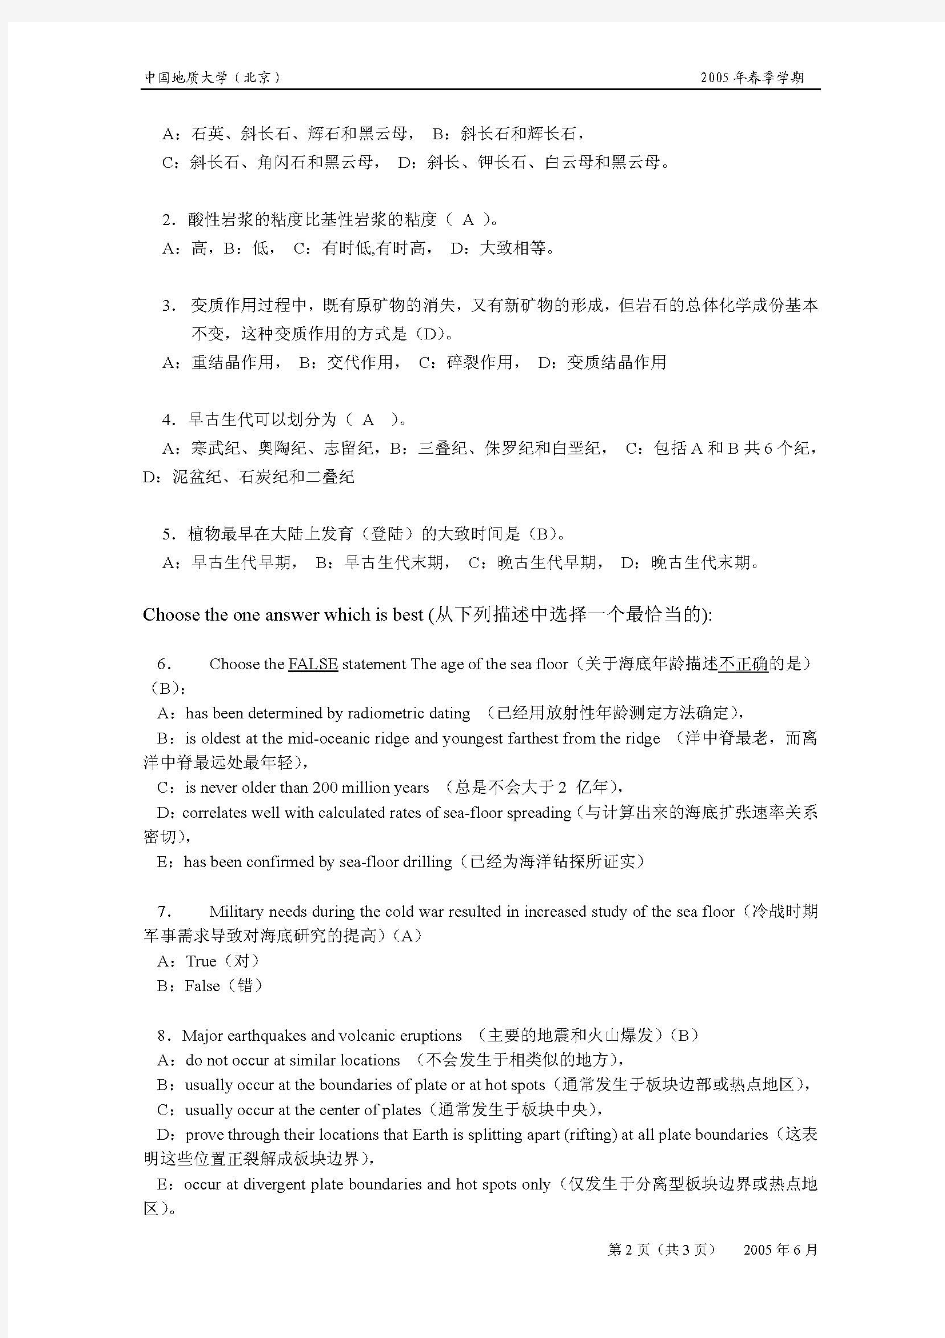 中国地质大学(北京)地球科学概论2004年试题